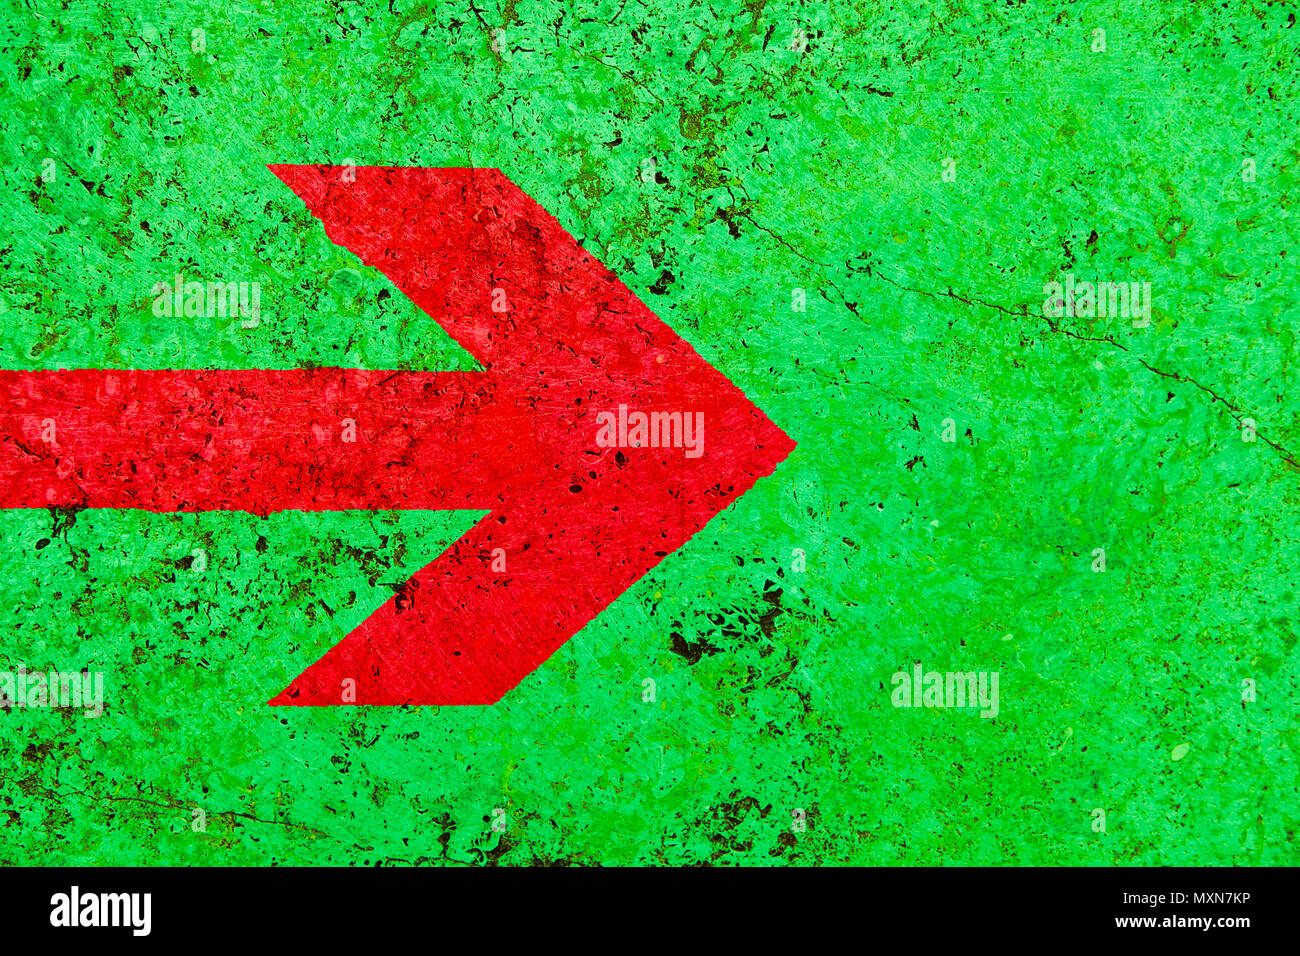 Roter Pfeil Richtung Schild über lebendige helle grüne Farbe stone wall mit Unebenheiten und Risse als leere rustikal und einfach Hintergrund Textur Raum Stockfoto